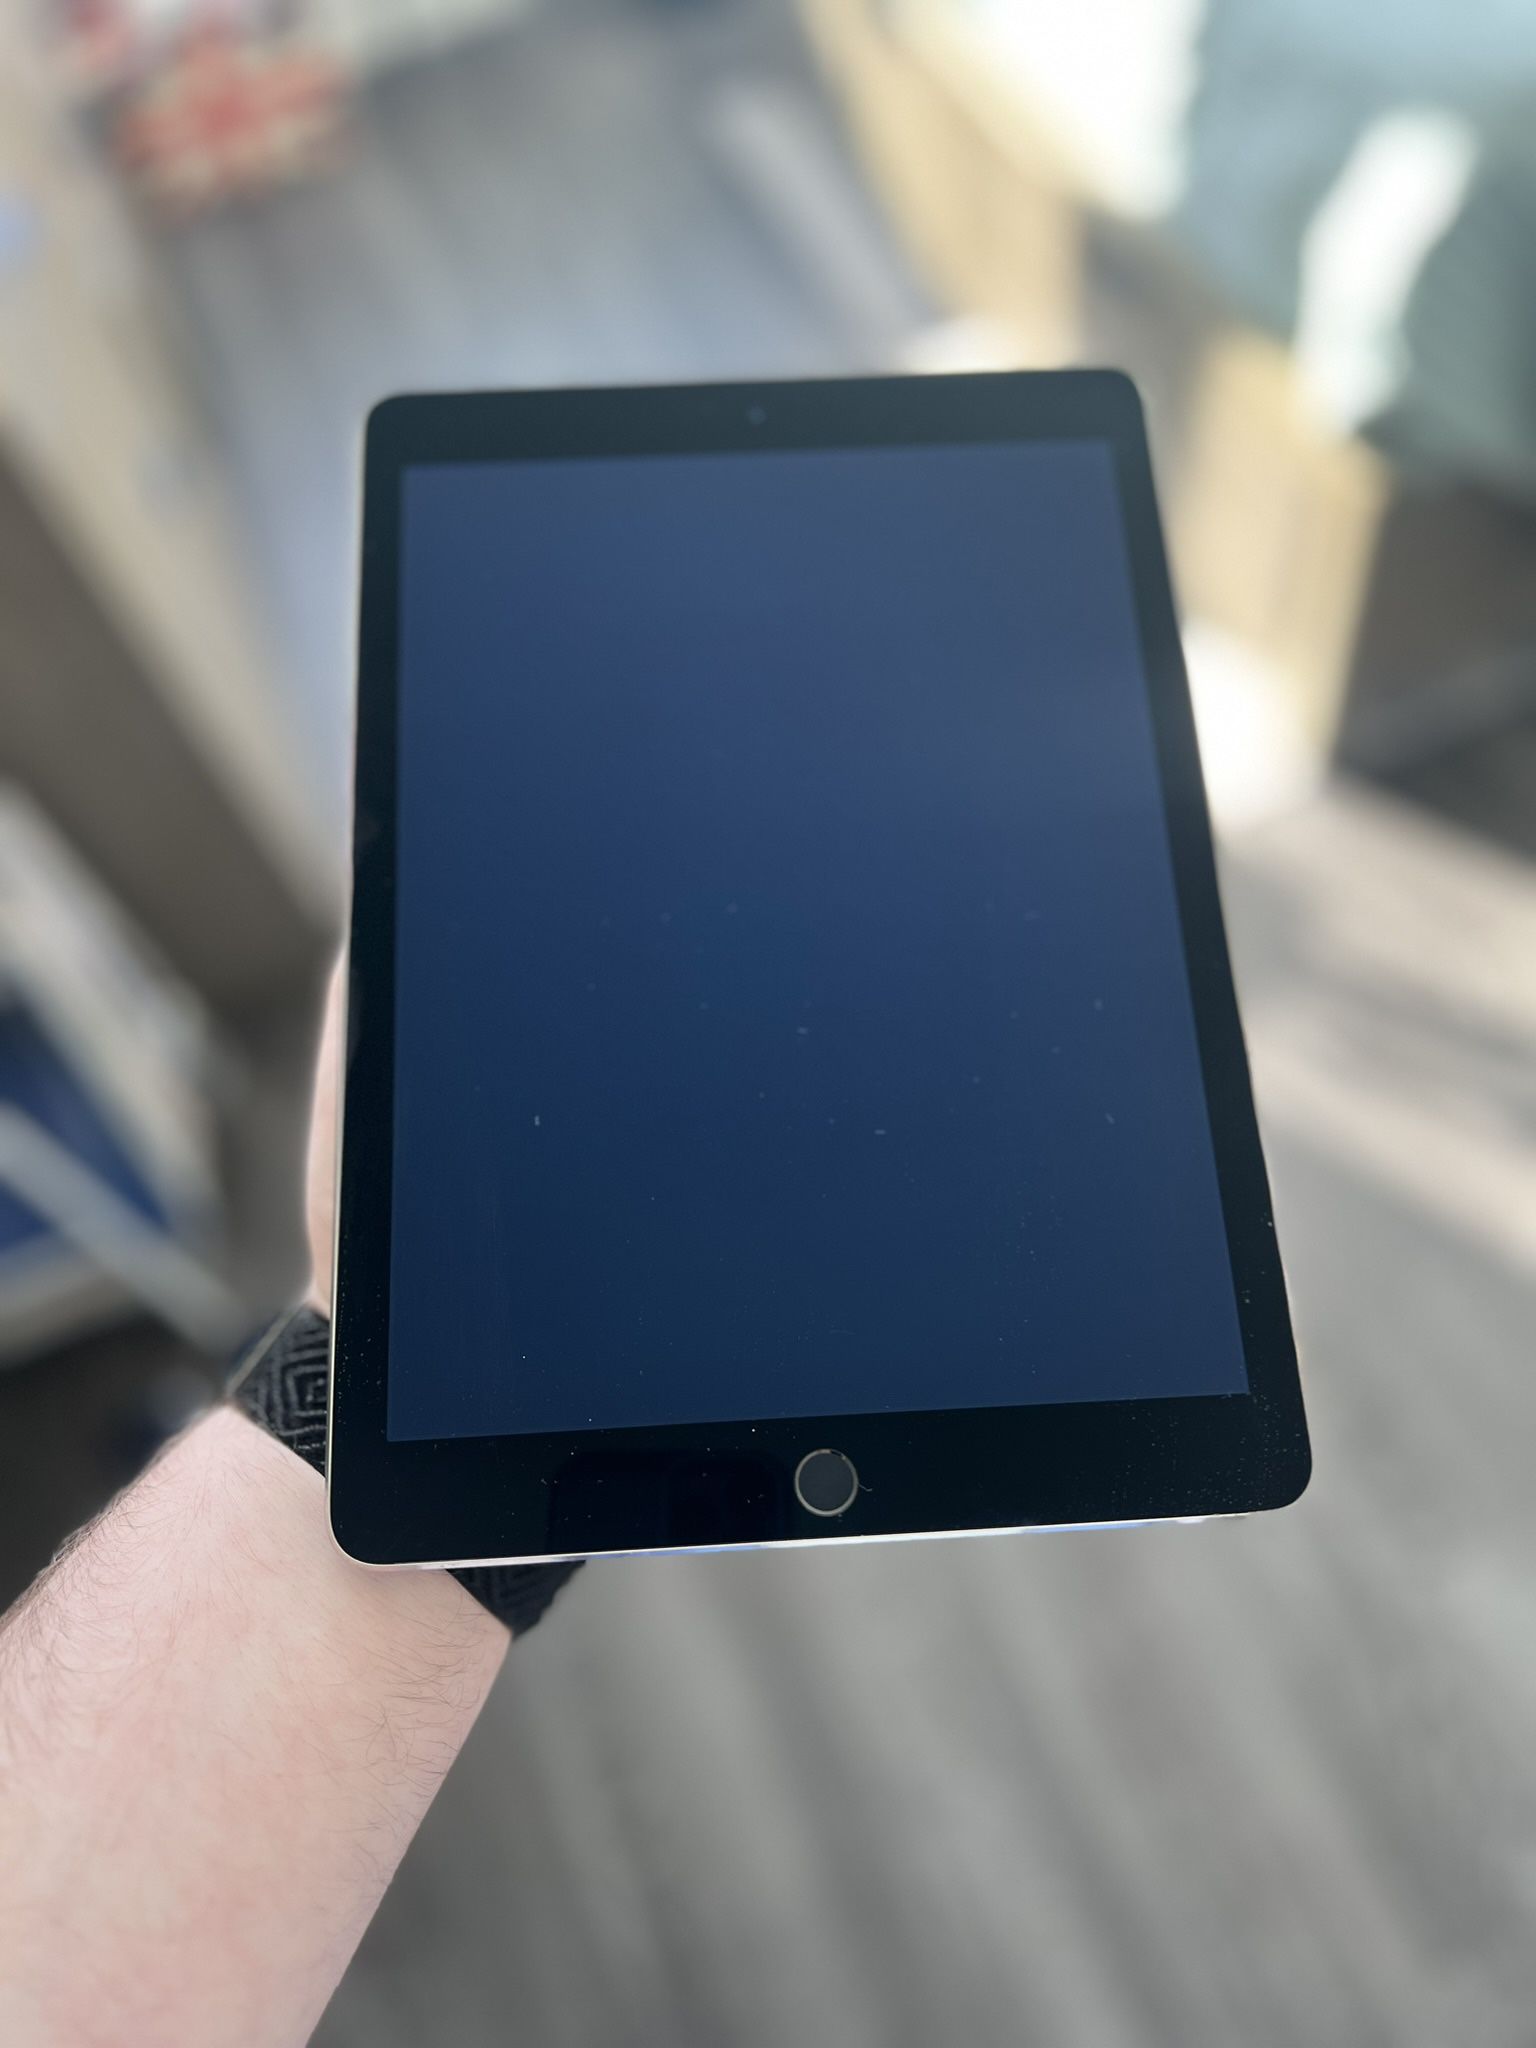 iPad Air - 2nd Generation 